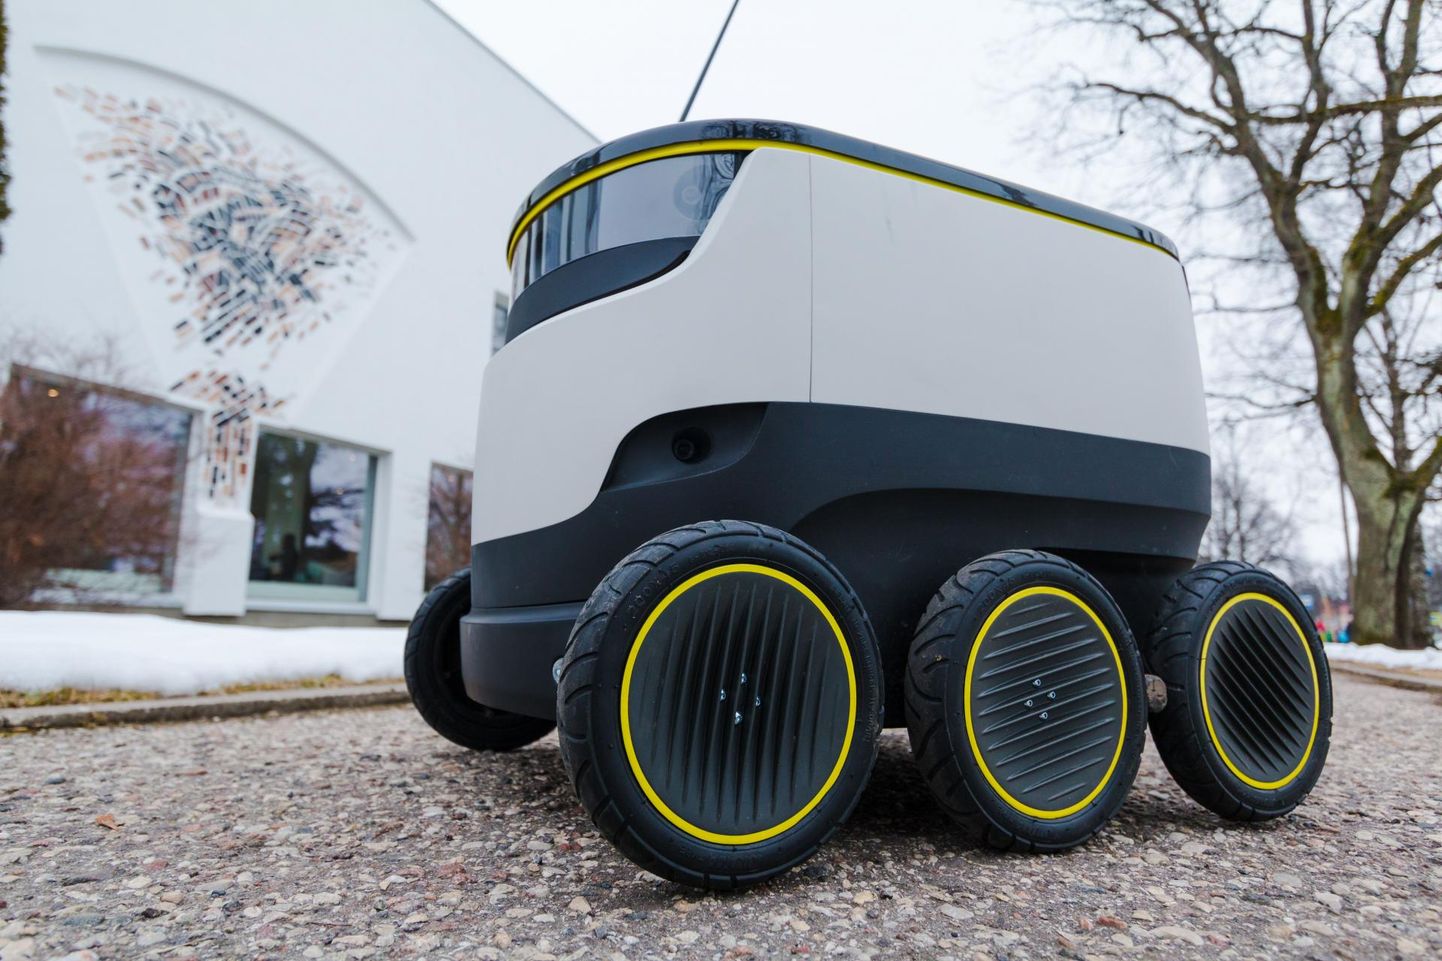 Робот для доставки посылок, созданный эстонским стартапом Starship Technologies.